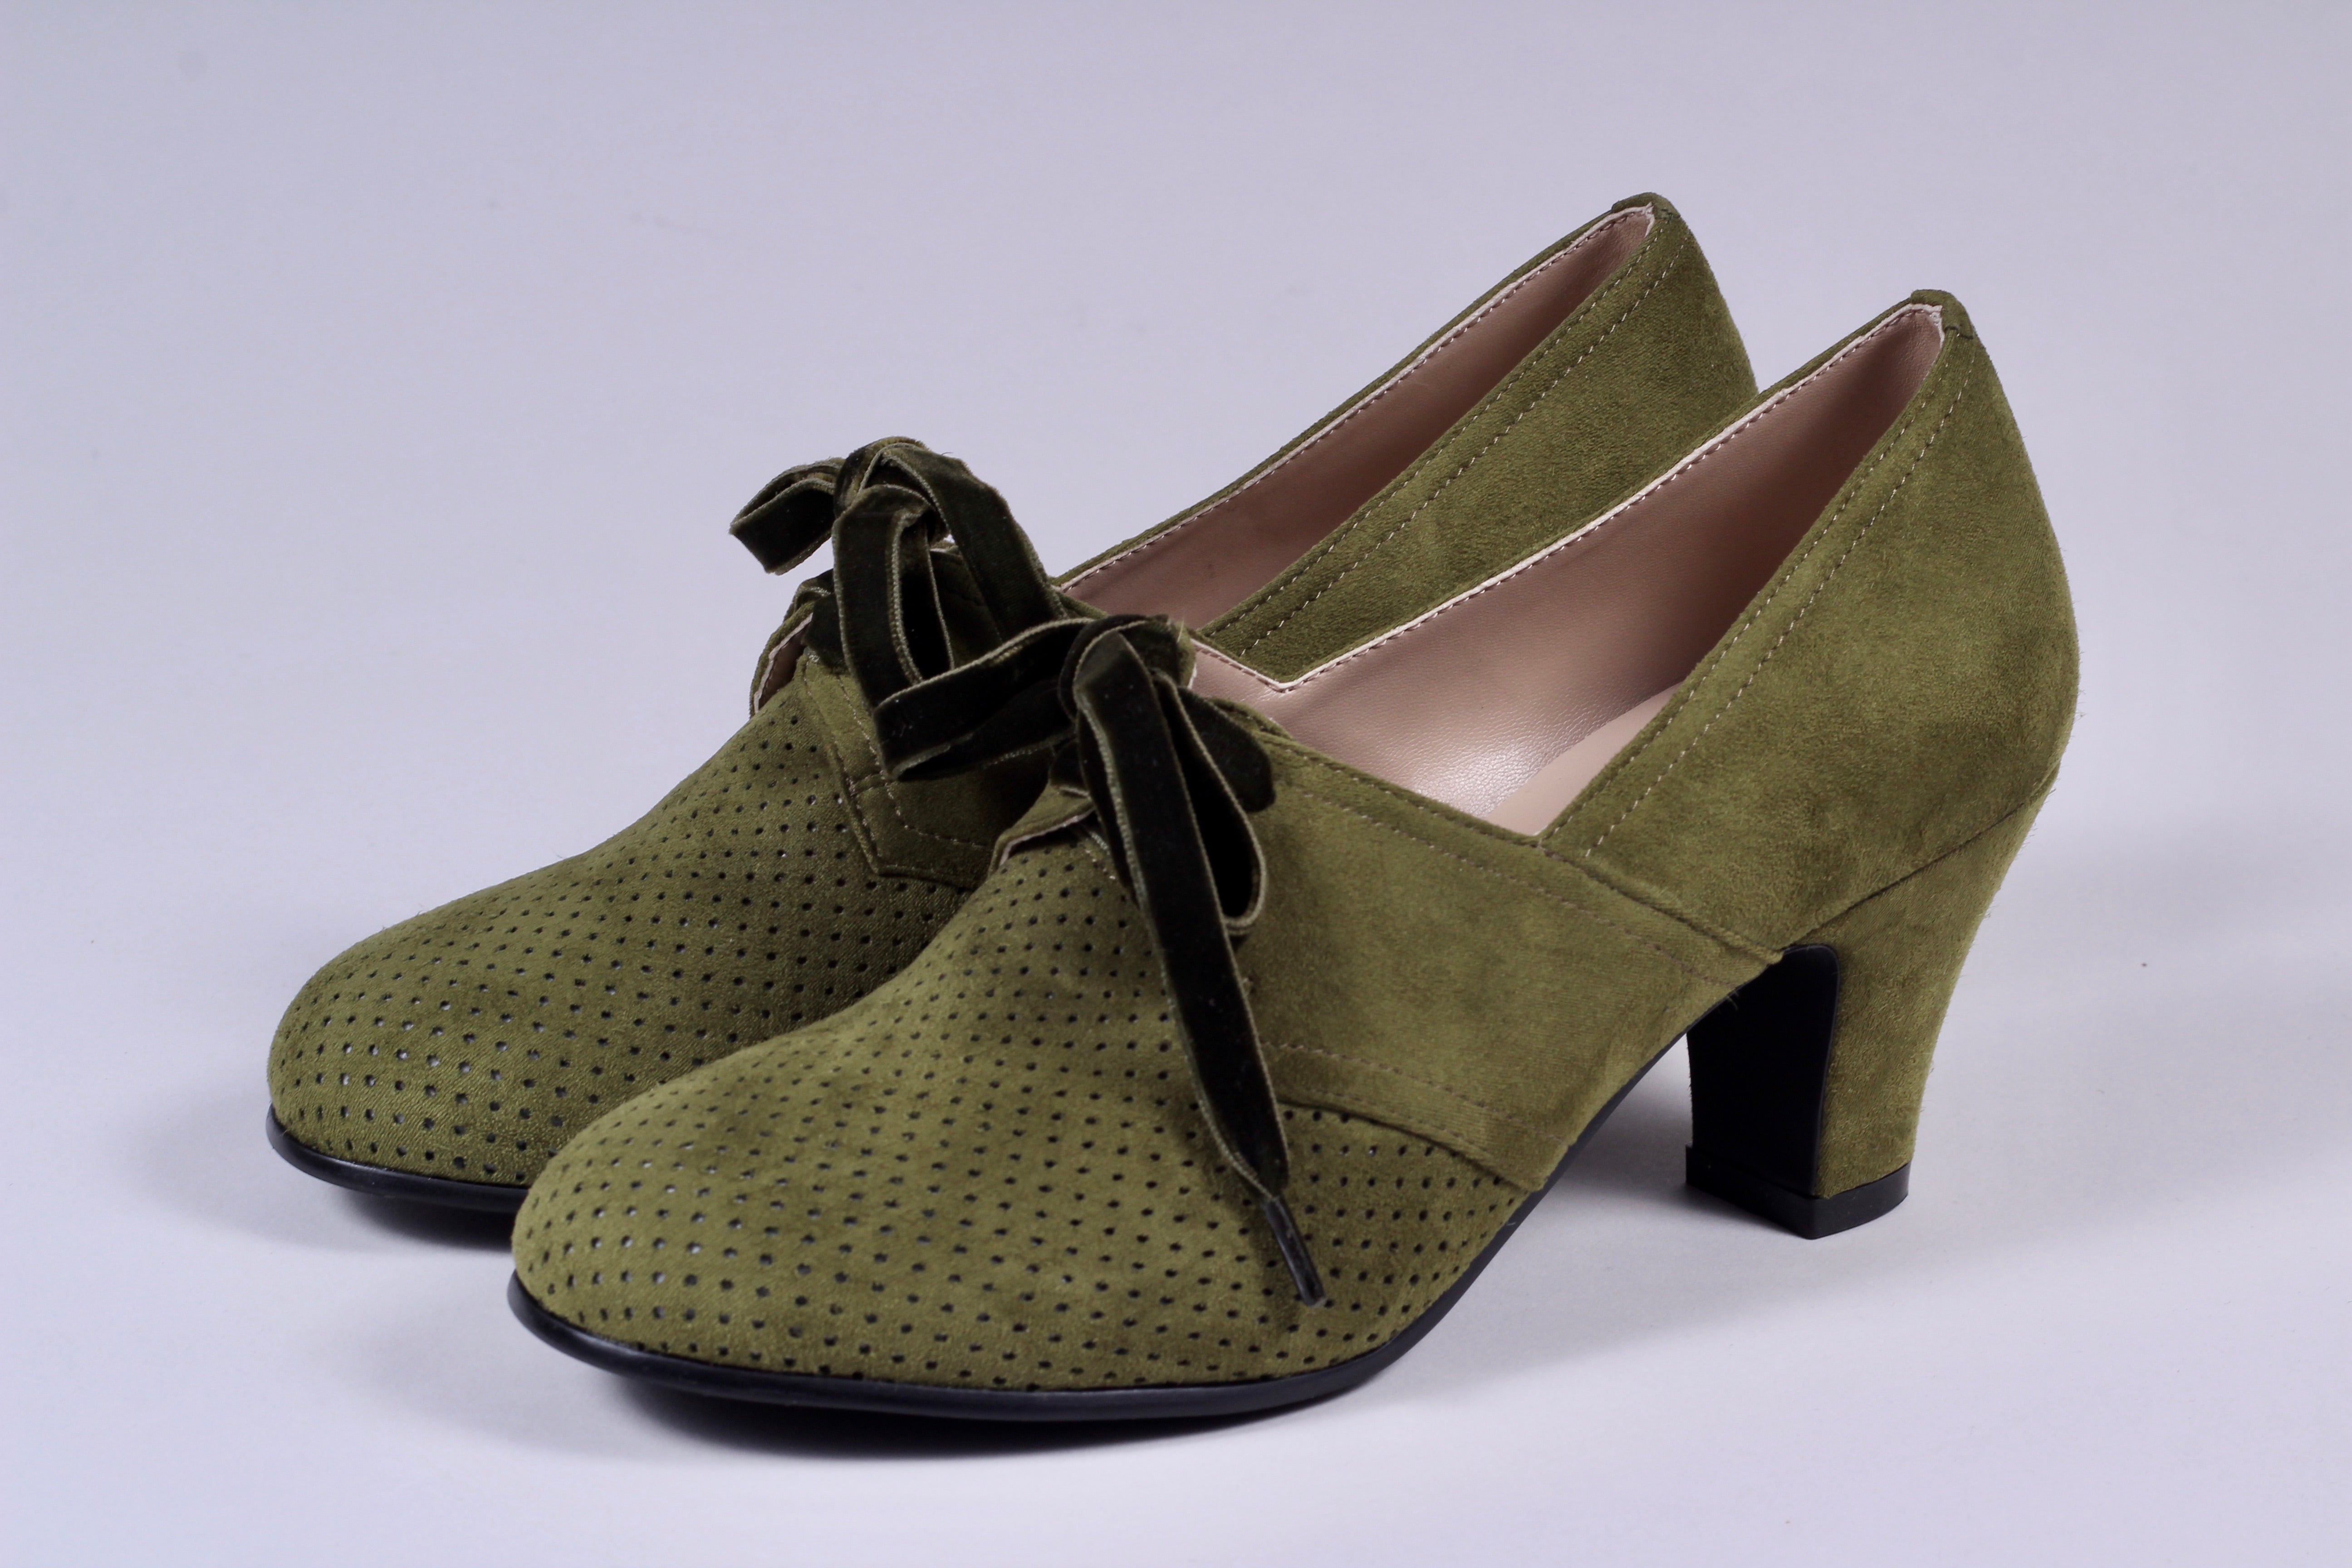 Vegansk sko i vintage style - 40'er vintage style med snøre – Vintage Divine